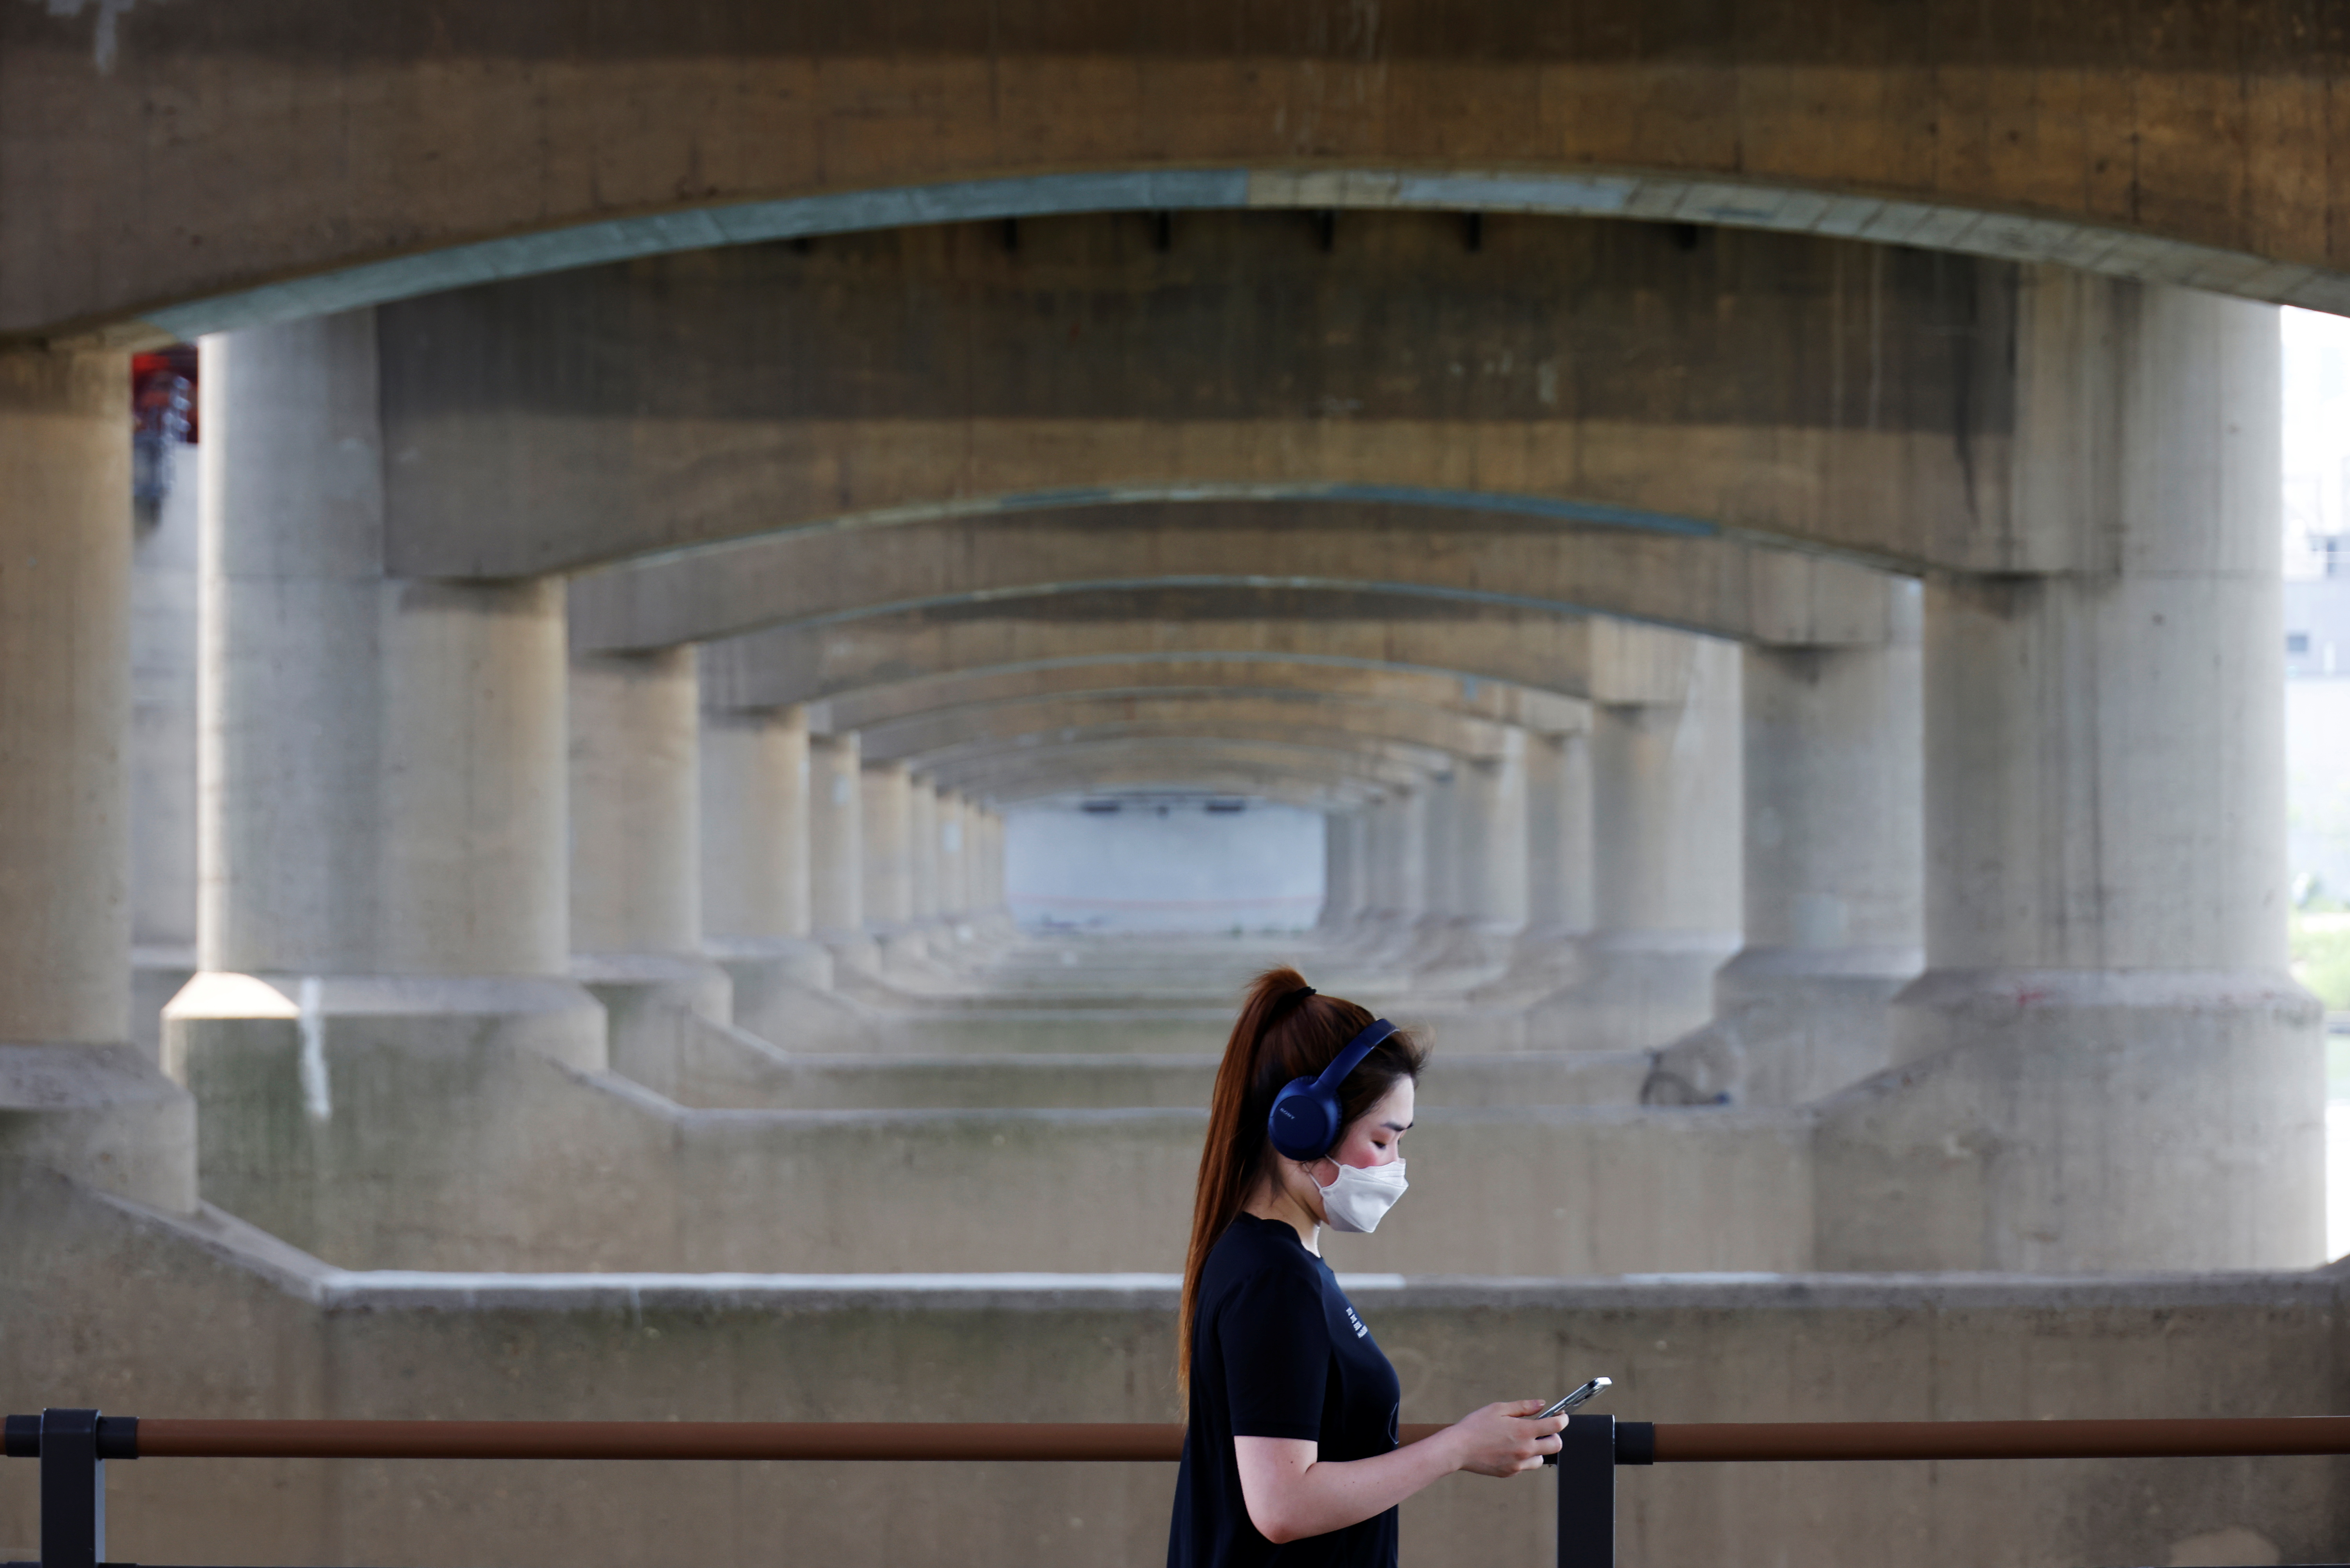 A woman takes a walk at a Han river park amid the coronavirus disease (COVID-19) pandemic, in Seoul